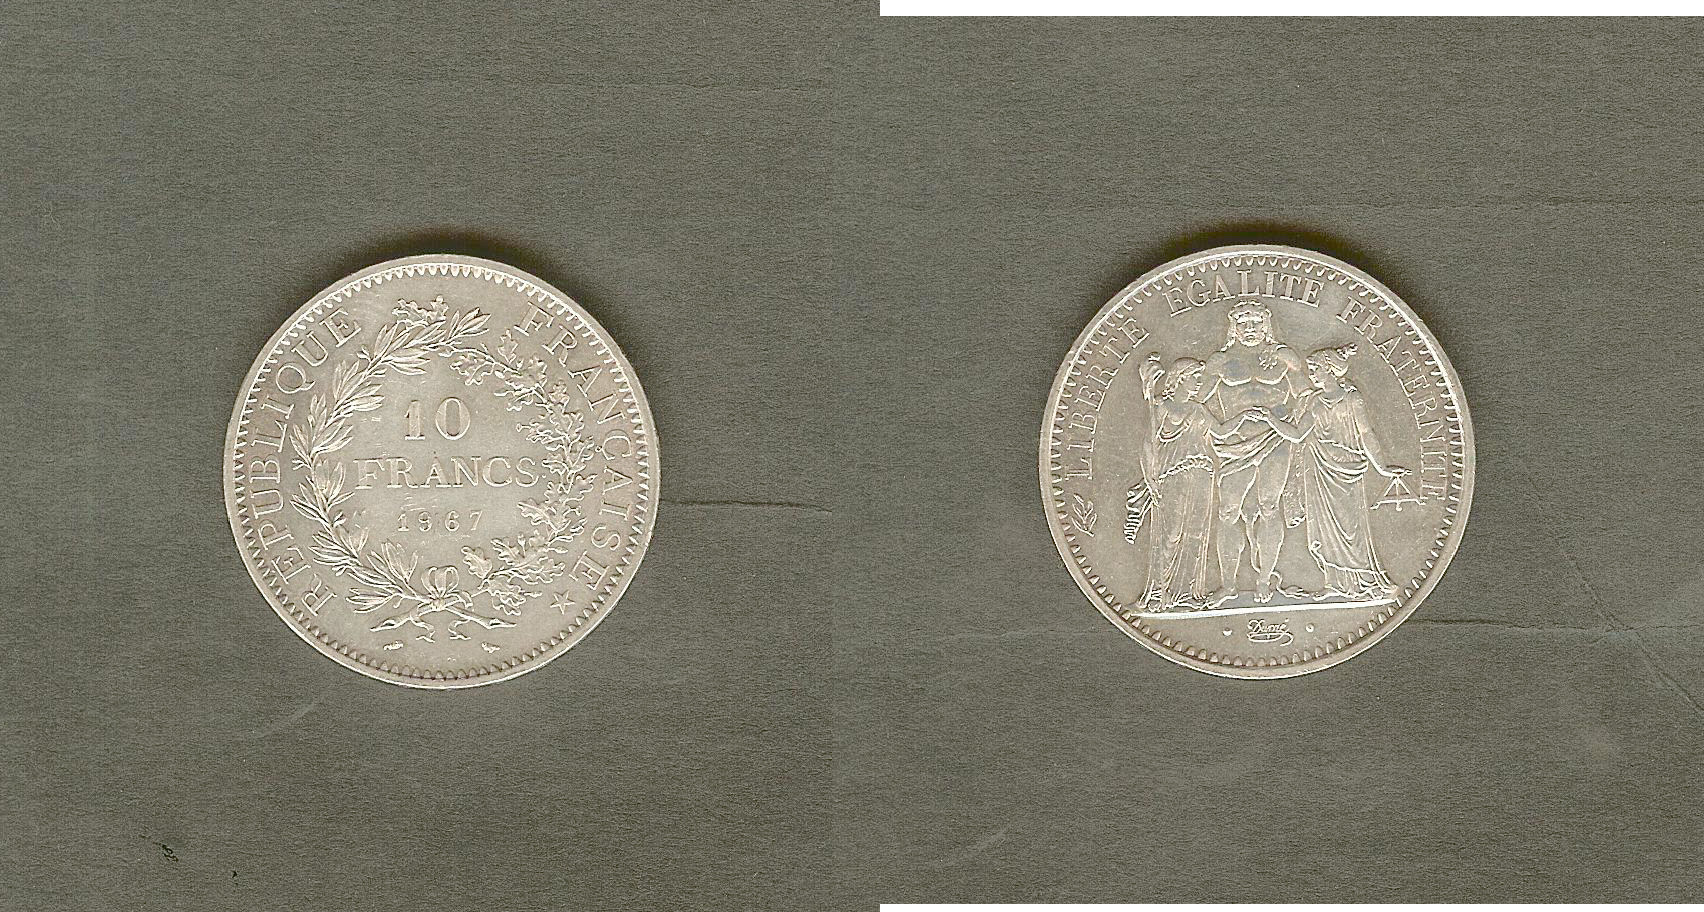 10 francs Hercule 1967 Unc